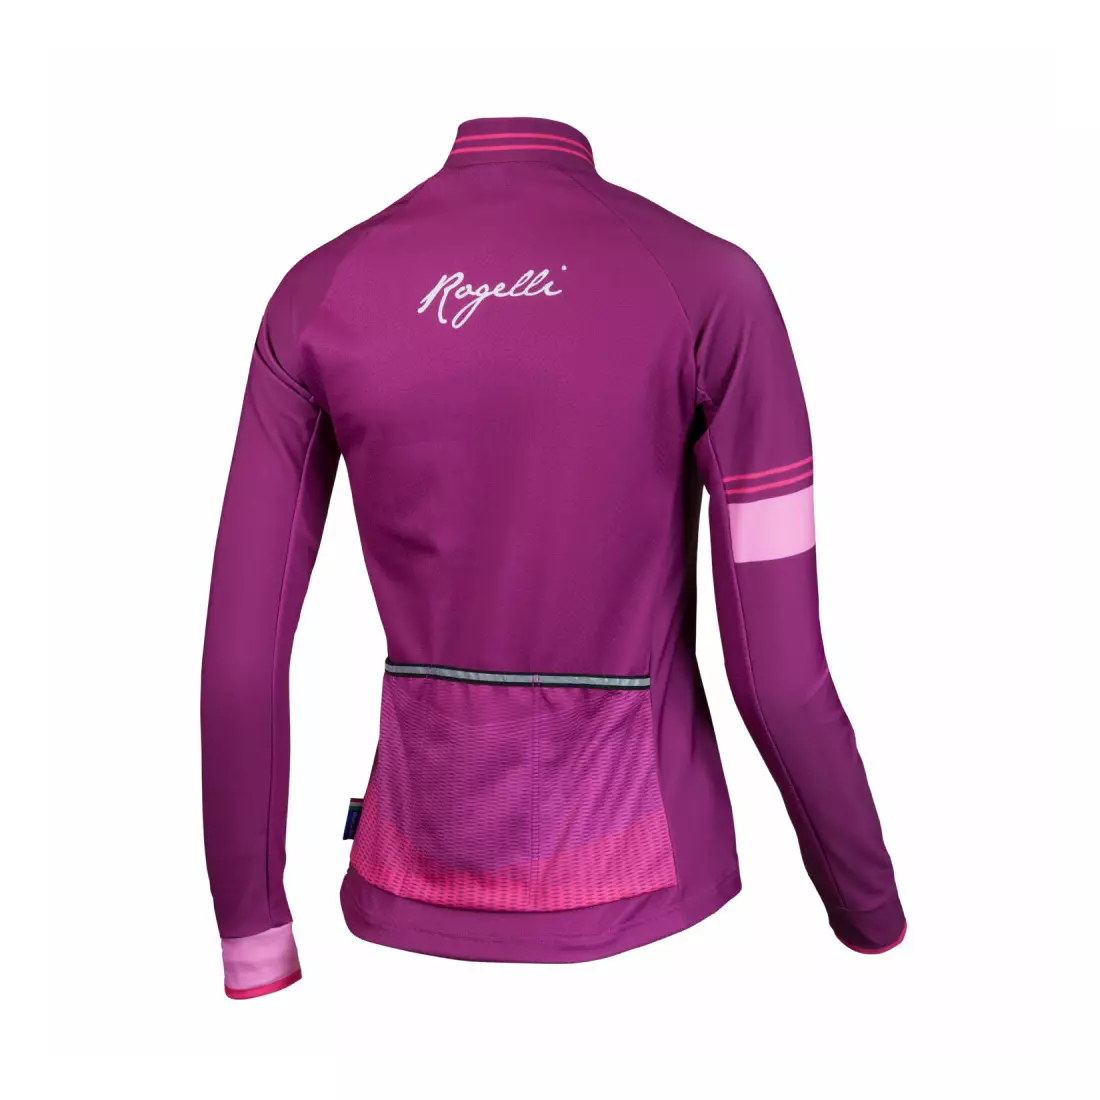 ROGELLI STELLE women's cycling sweatshirt, pink